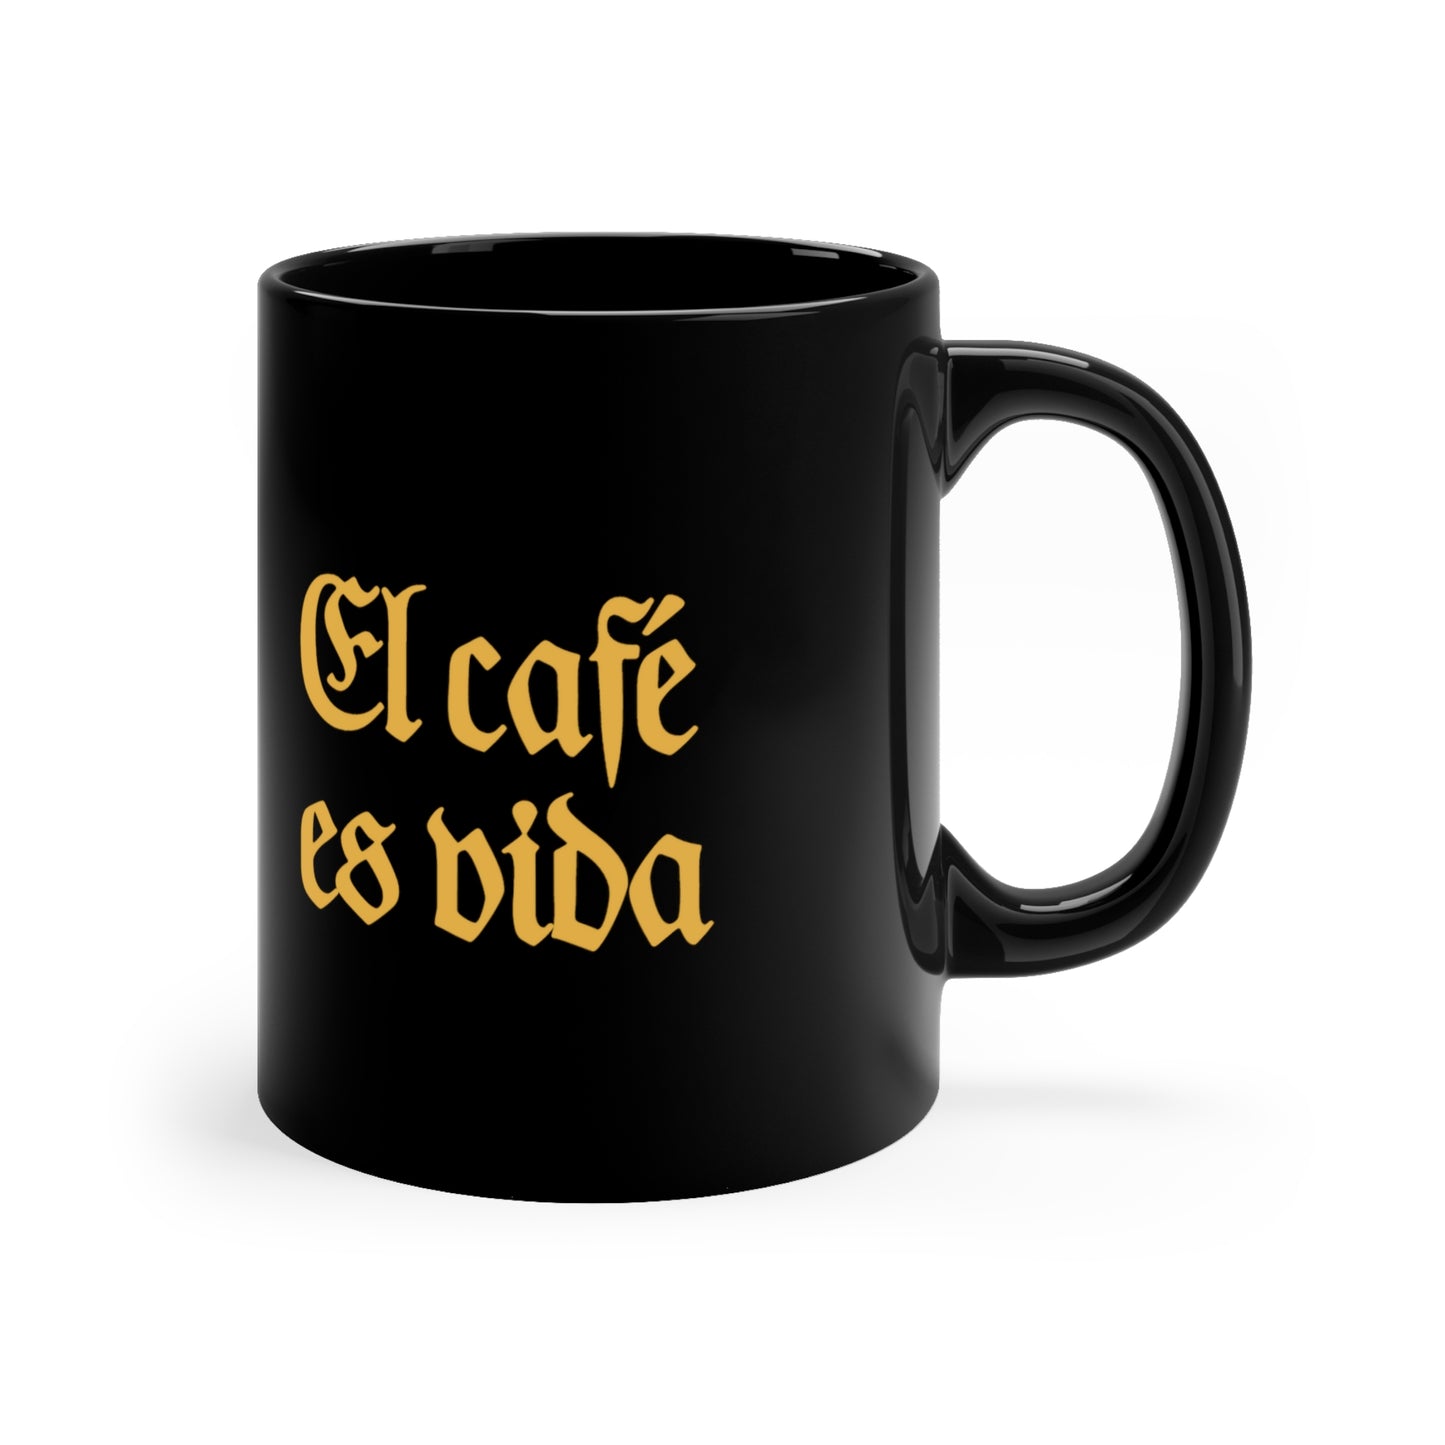 "El cafe es vida" 11oz Black Mug